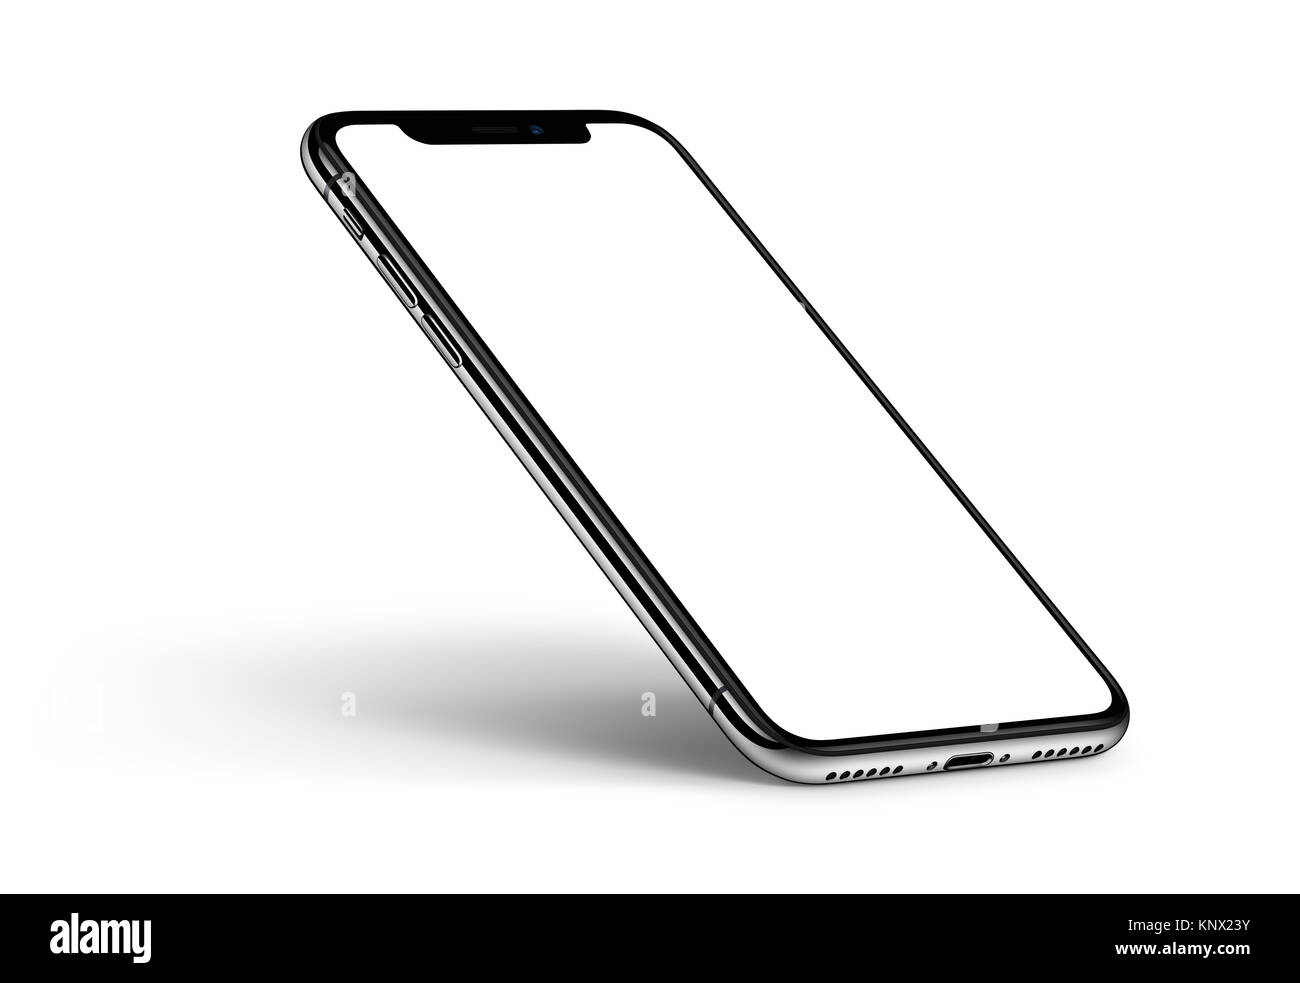 Perspektive Smartphone iPhone X mockup mit Schatten GEGEN DEN UHRZEIGERSINN gedreht auf weißem Hintergrund. Stockfoto